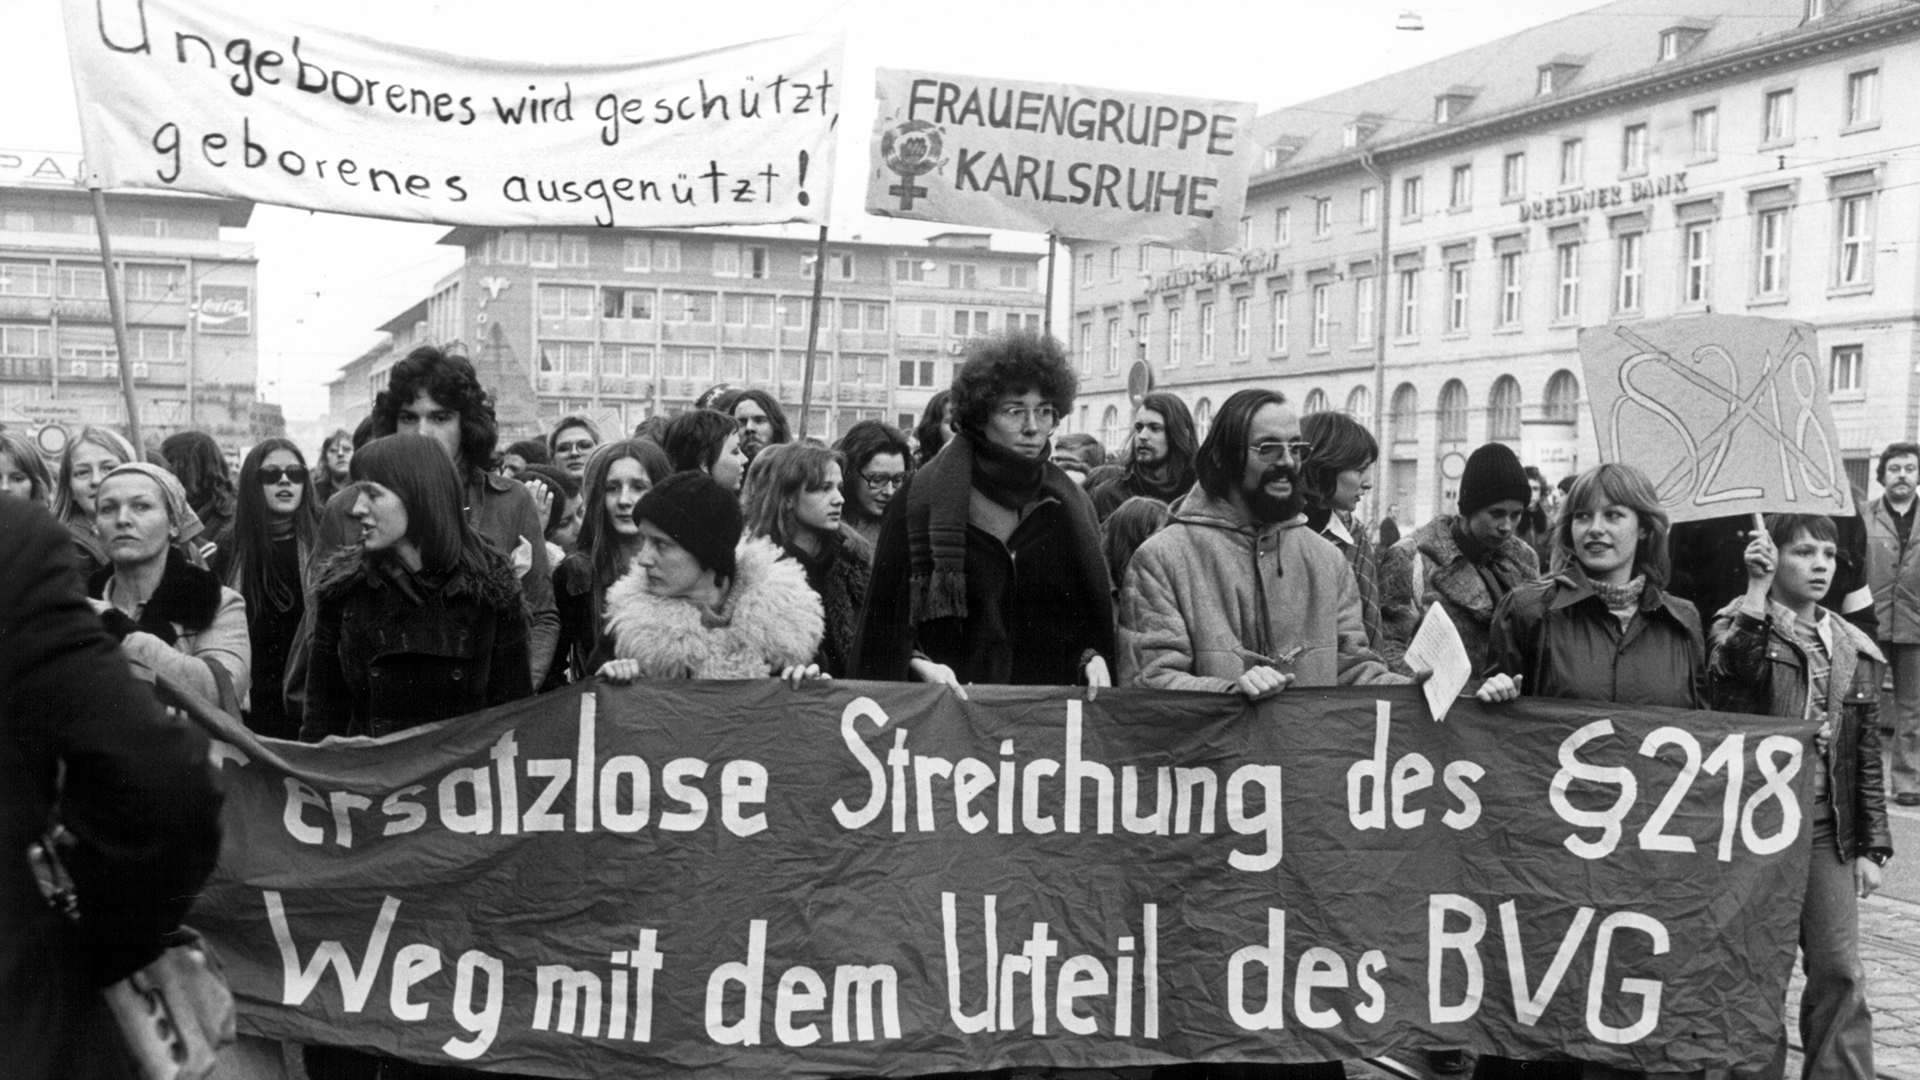 Nach der Urteilsverkündung demonstrieren Gegner des Paragraf 218 in Karlsruhe gegen das Urteil. (Archivbild: 25. Februar 1975) | picture-alliance / dpa